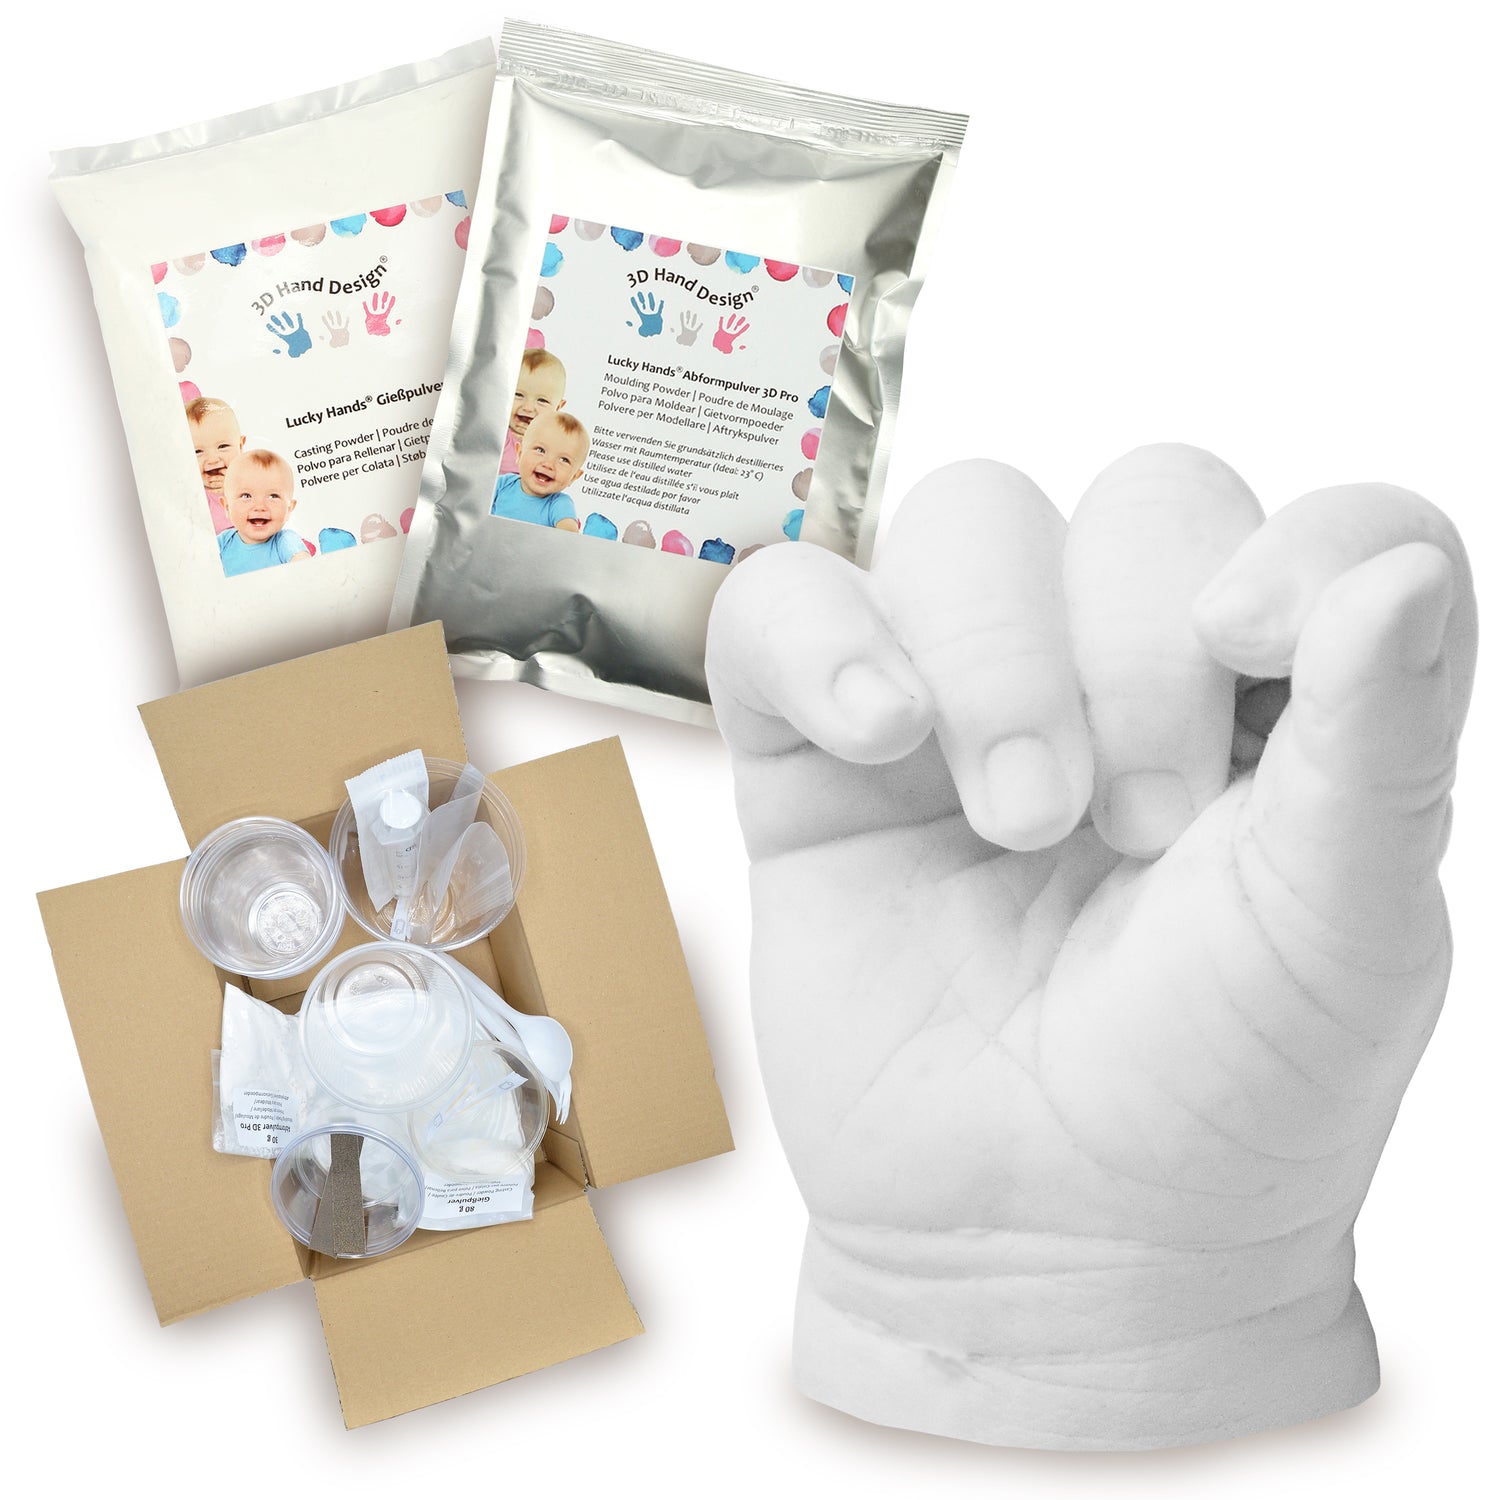 Kits moulage pour bébés et tout-petits – 3D Hand Design